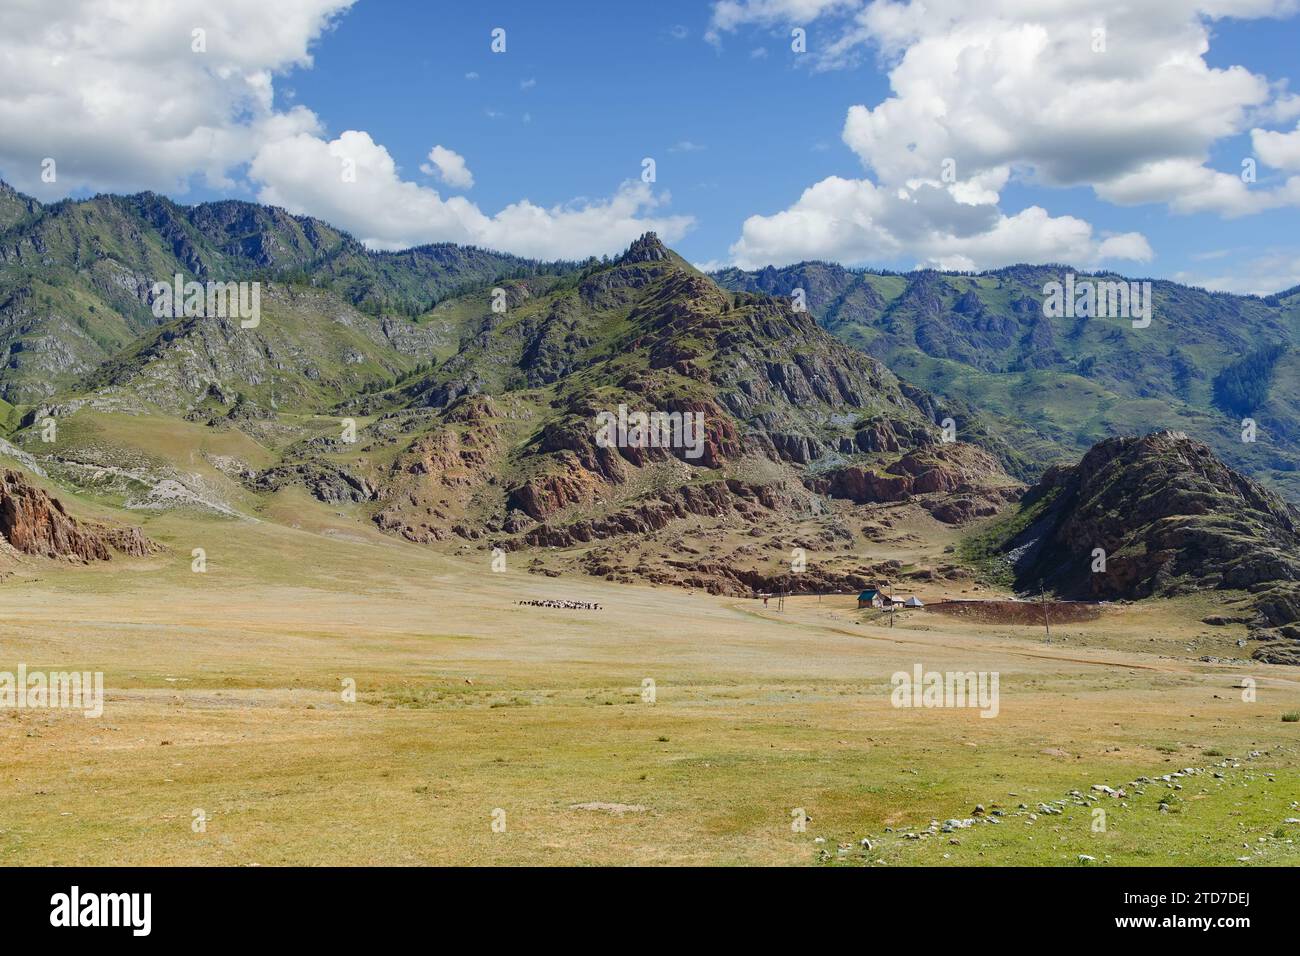 Landschaft mit einem kleinen Dorf und Weidevieh in der Nähe hoher Berge bei gutem Wetter. Republik Altai. Russland. Stockfoto